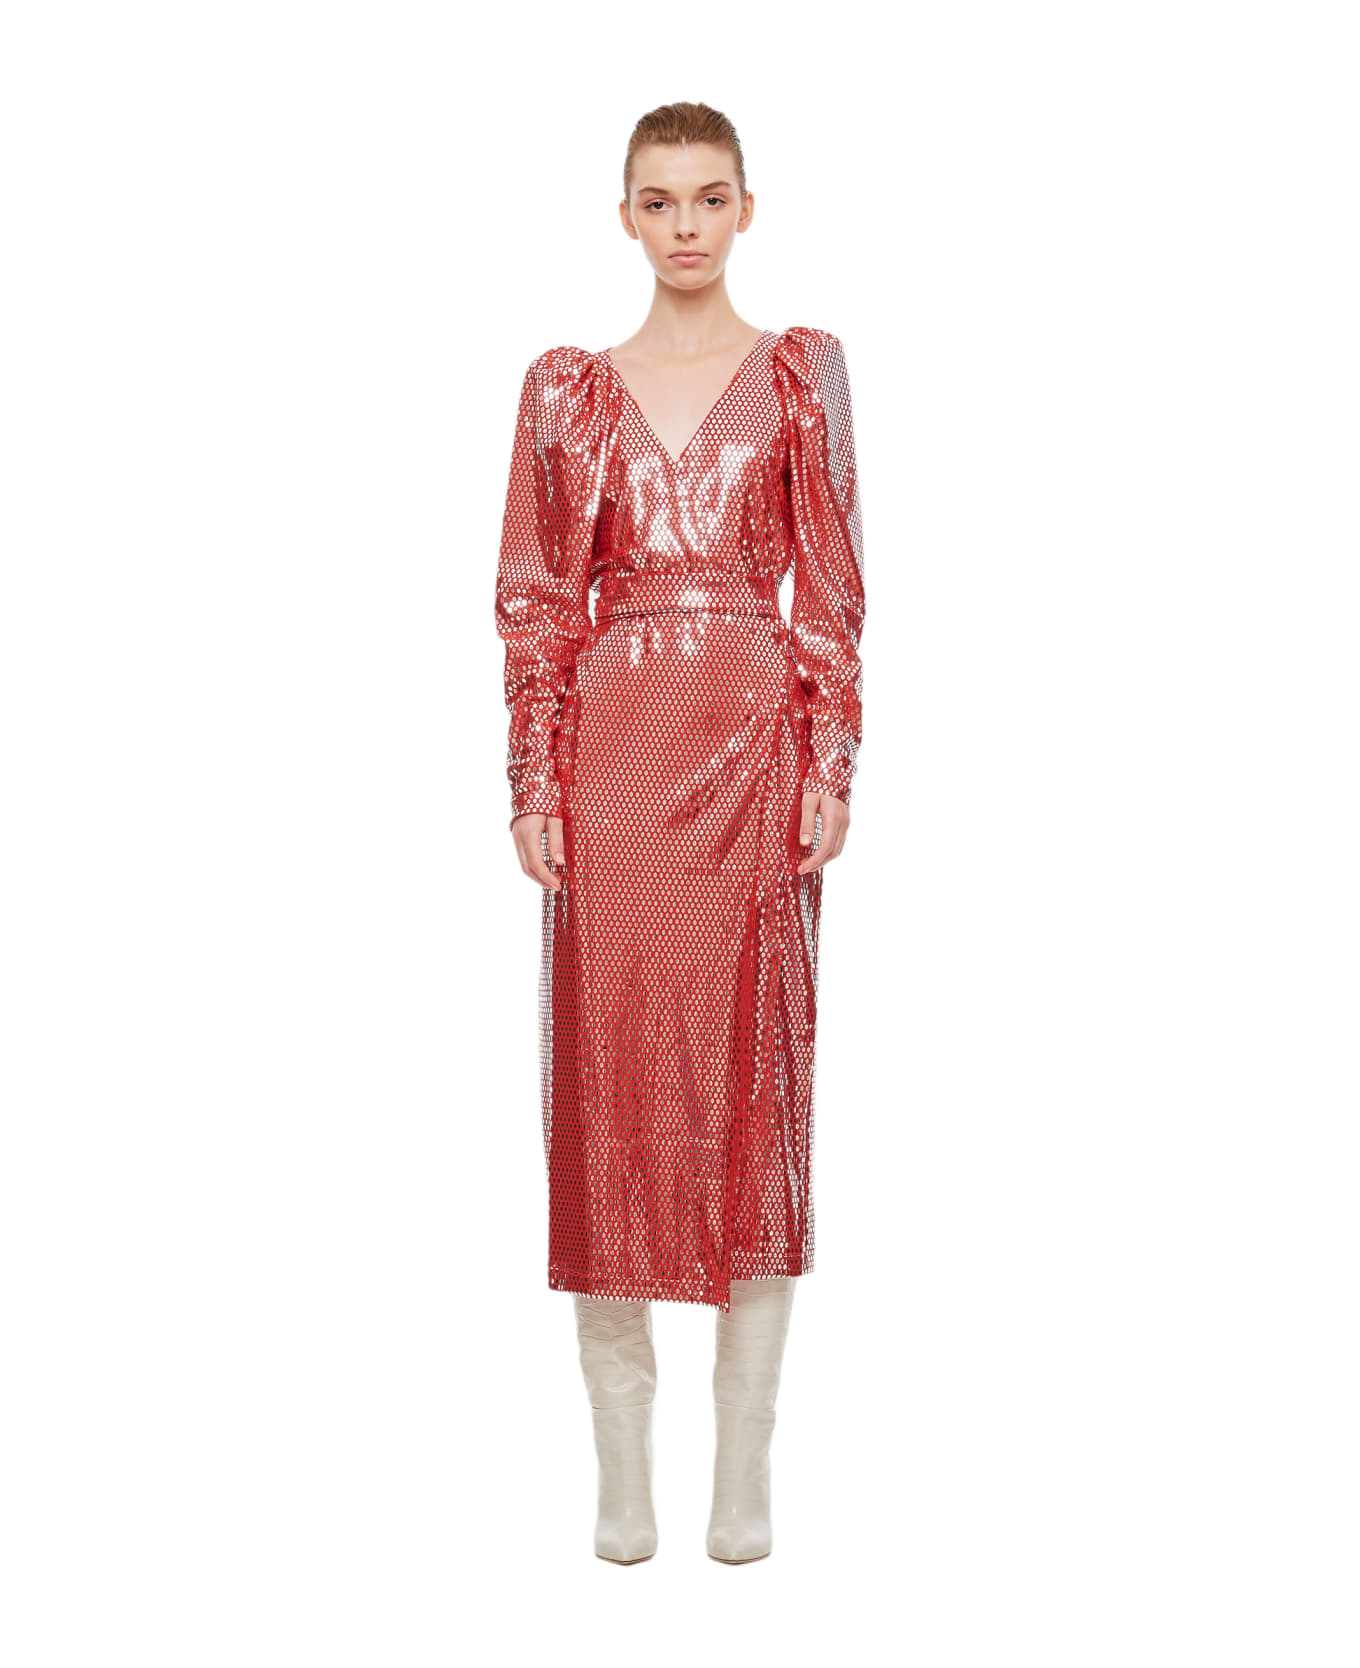 Rotate by Birger Christensen Bridget Midi Dress - Red